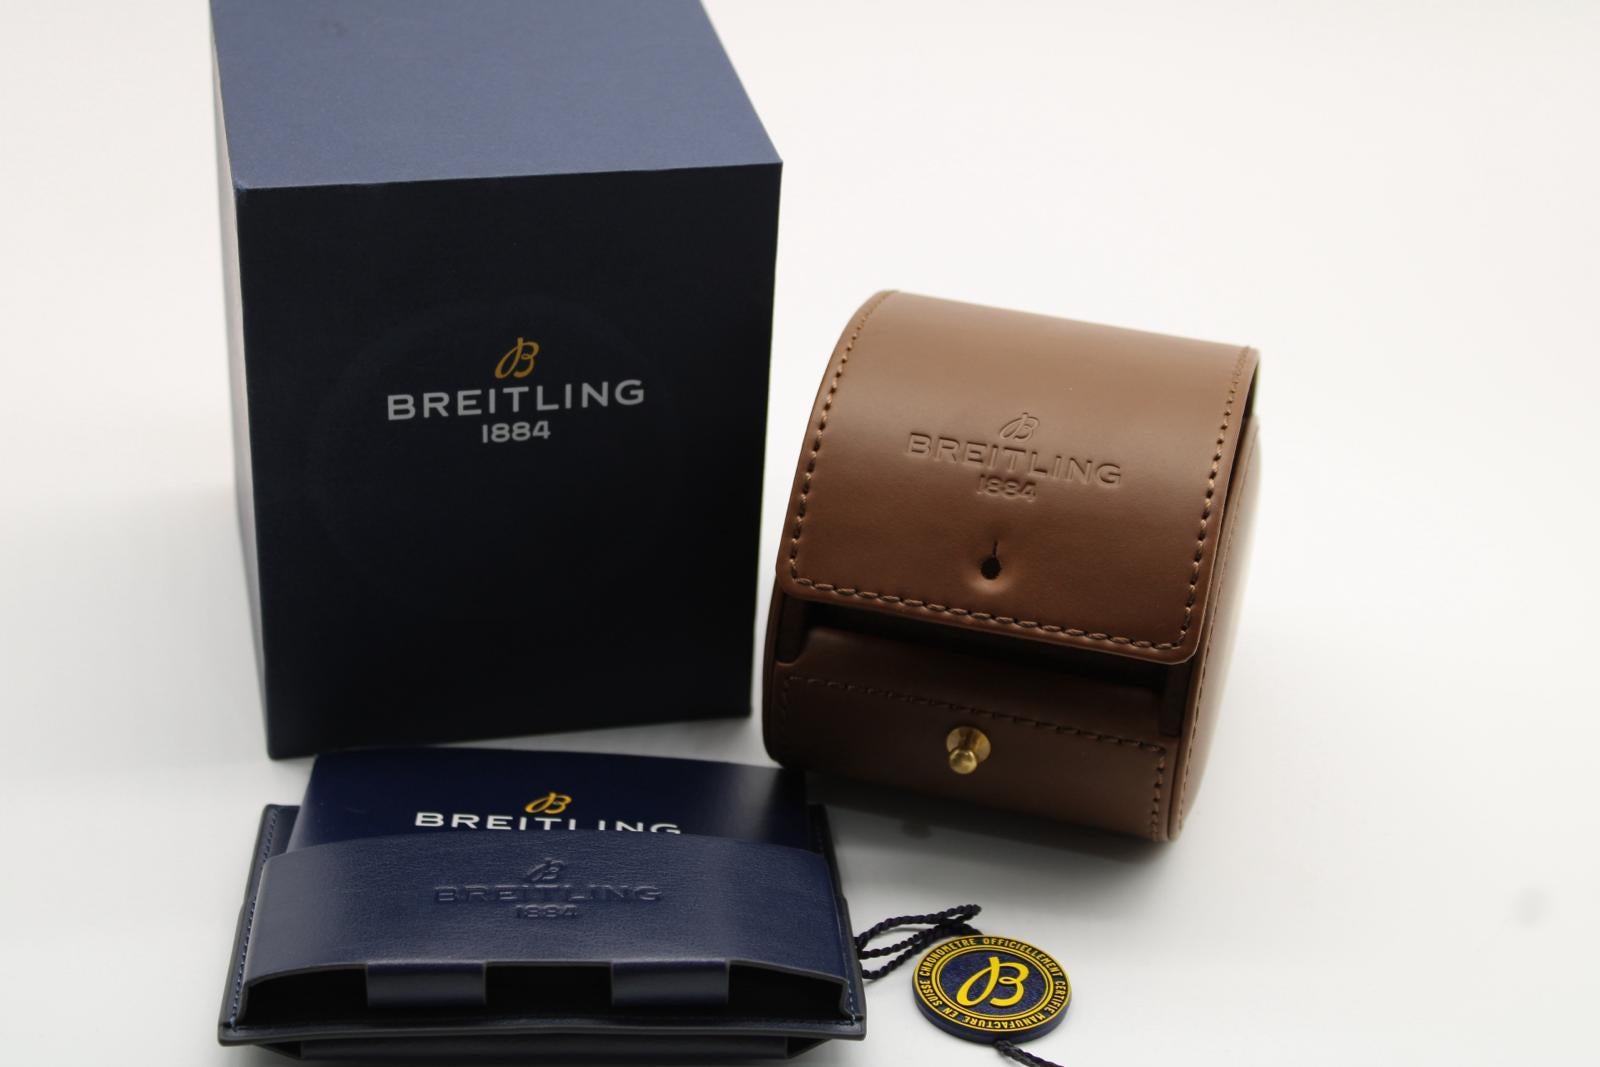 Die Breitling Endurance Pro bietet einen hohen Wert in einer Uhr sowie als anders und langlebig. Dieses Modell, das X82310, wird mit dem roten Armband geliefert. Die Uhr wird mit der originalen Innen- und Außenbox, dem Anhänger, der Brieftasche und